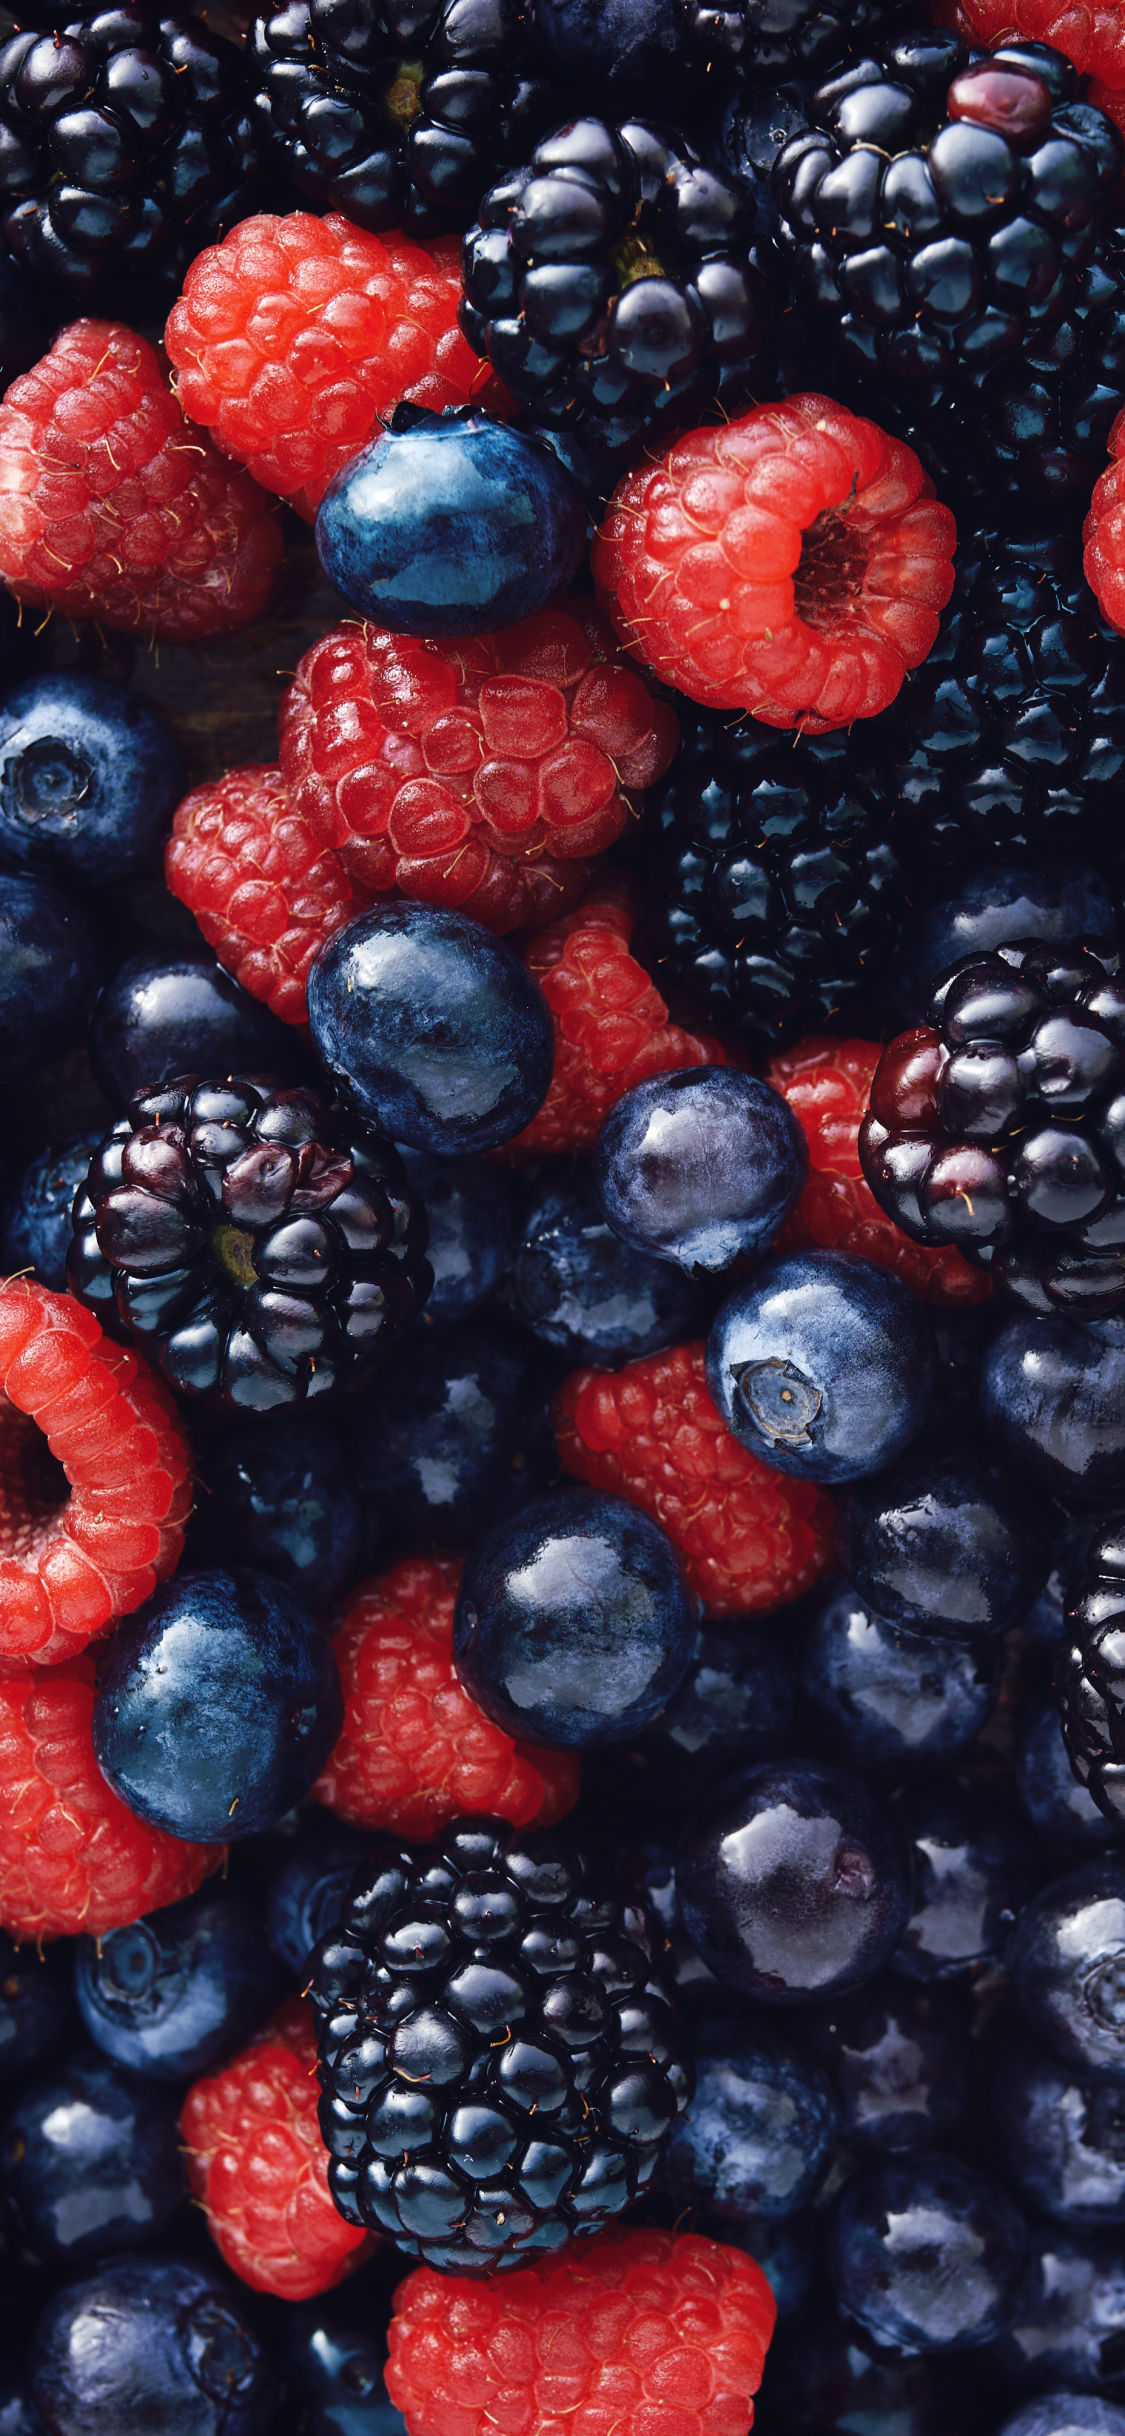 1310178 免費下載壁紙 食物, 浆果, 蓝莓, 覆盆子, 树莓, 水果, 黑莓 屏保和圖片